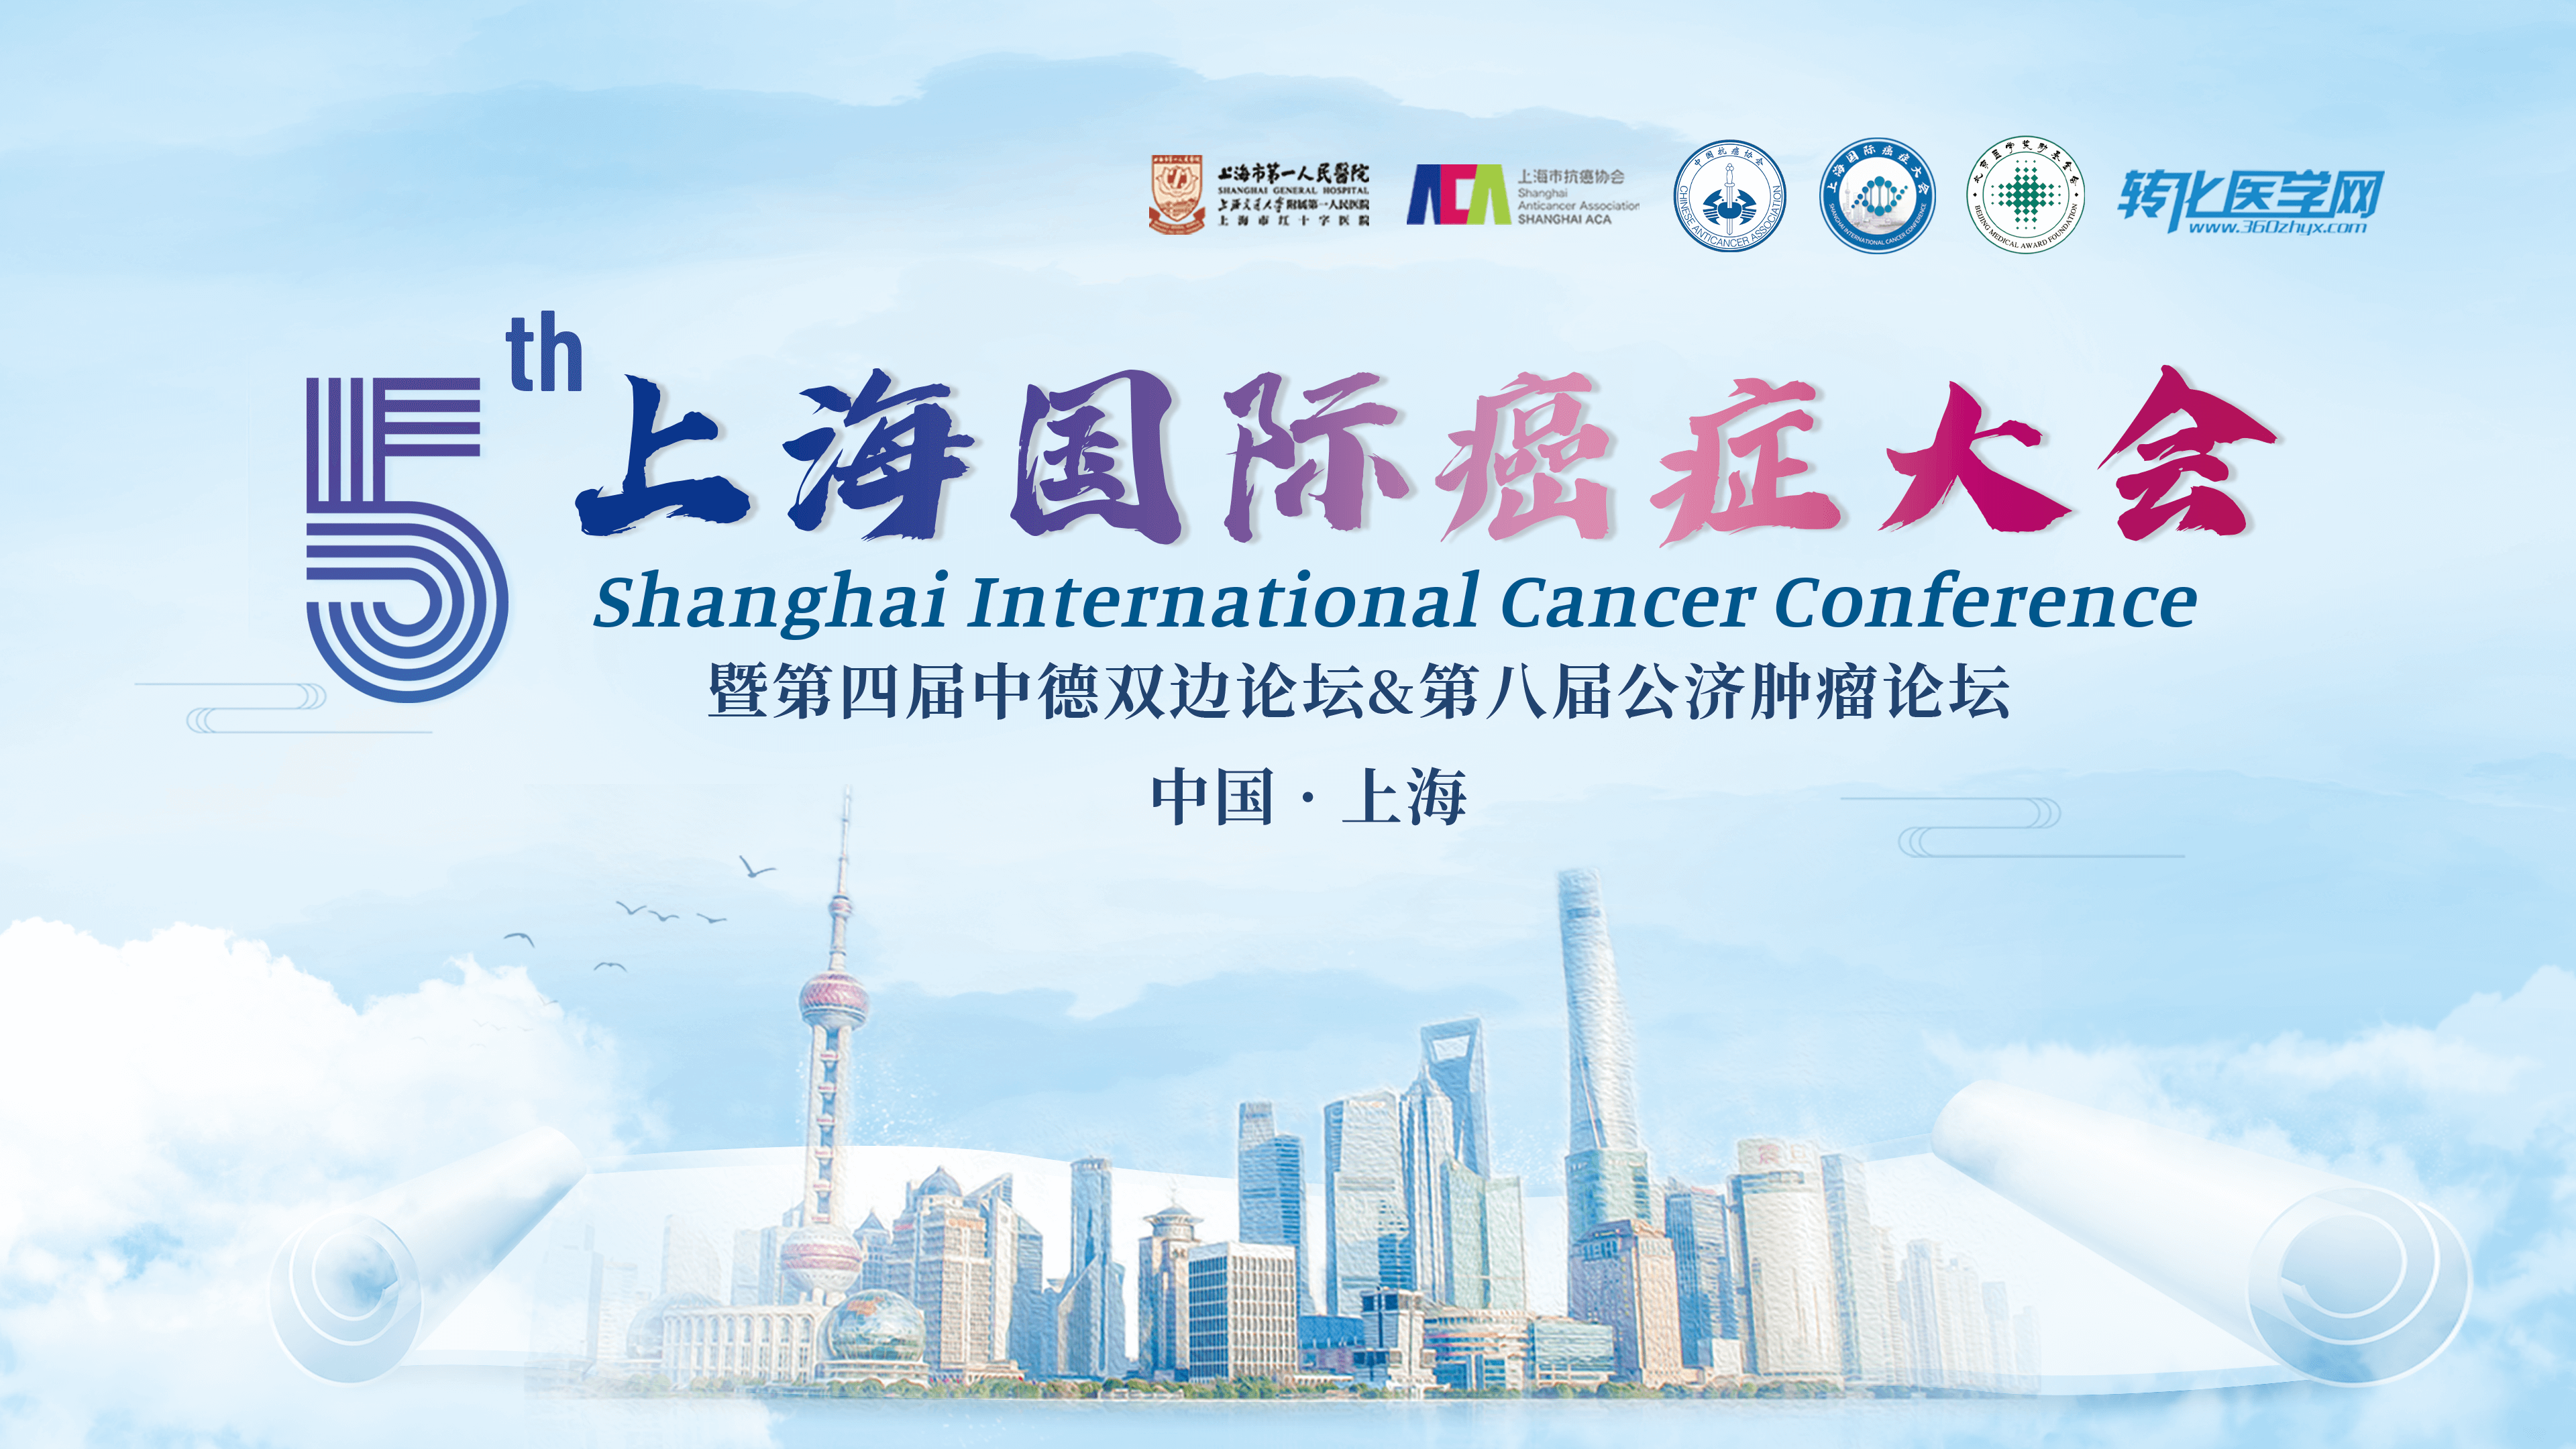 会议通知 | 辉瑞邀您共赴第五届上海国际癌症大会